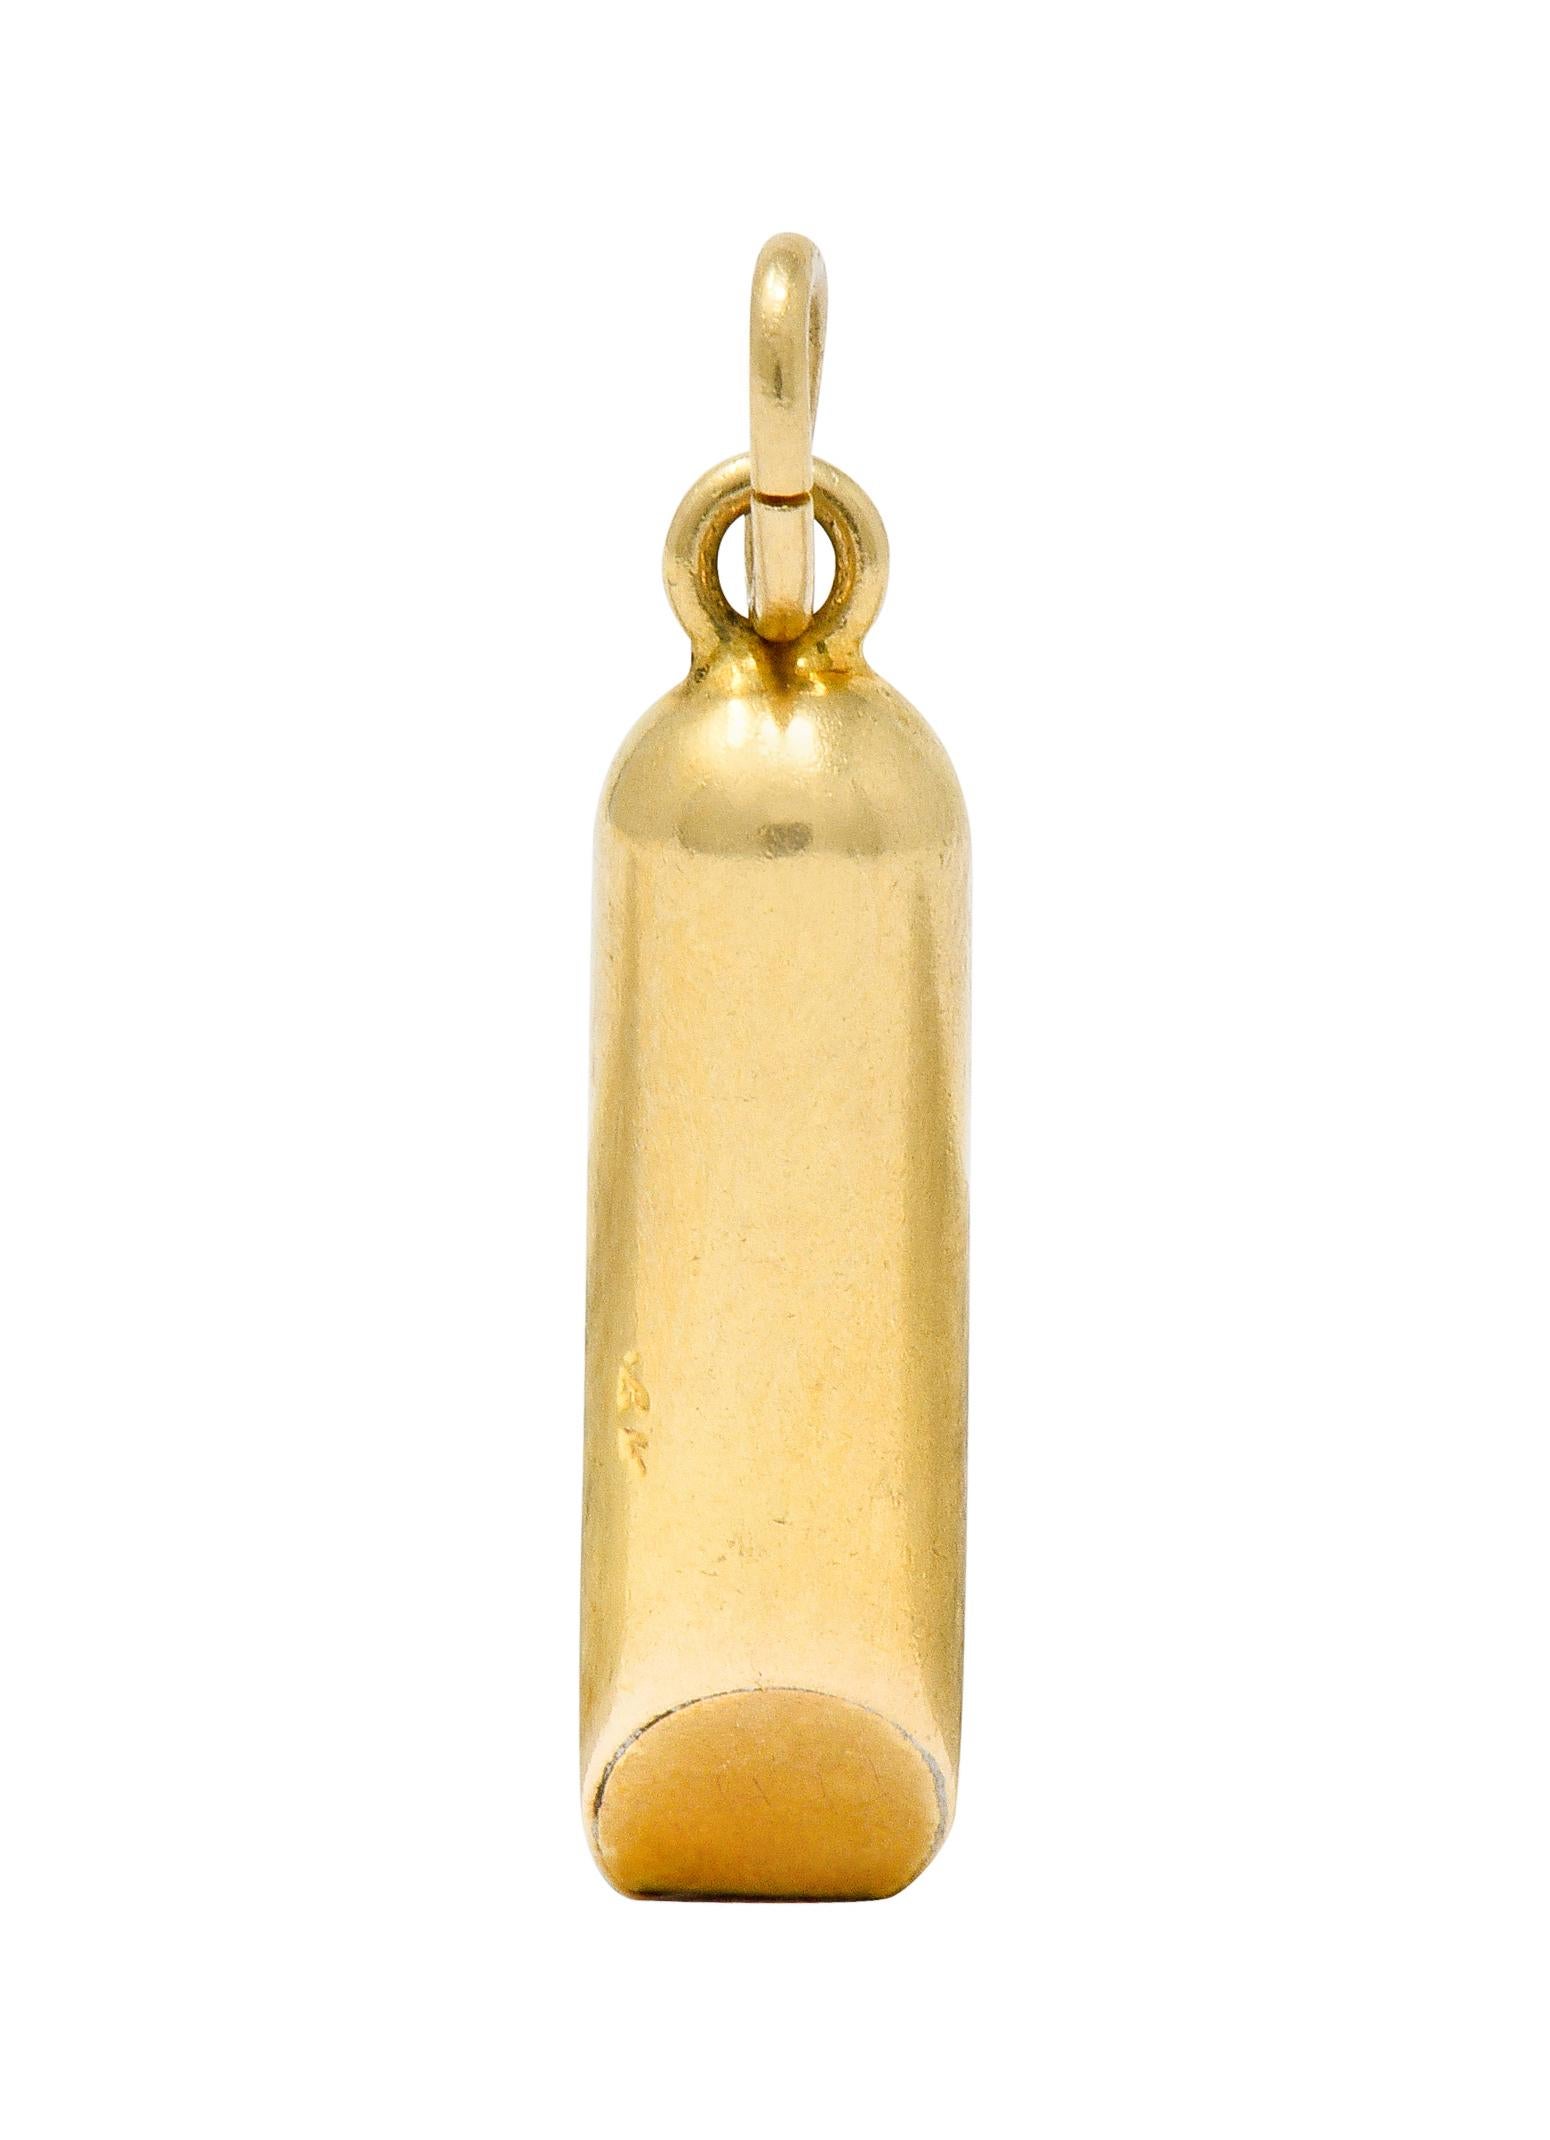 Women's or Men's Art Nouveau 14 Karat Gold Functional Antique Whistle Charm